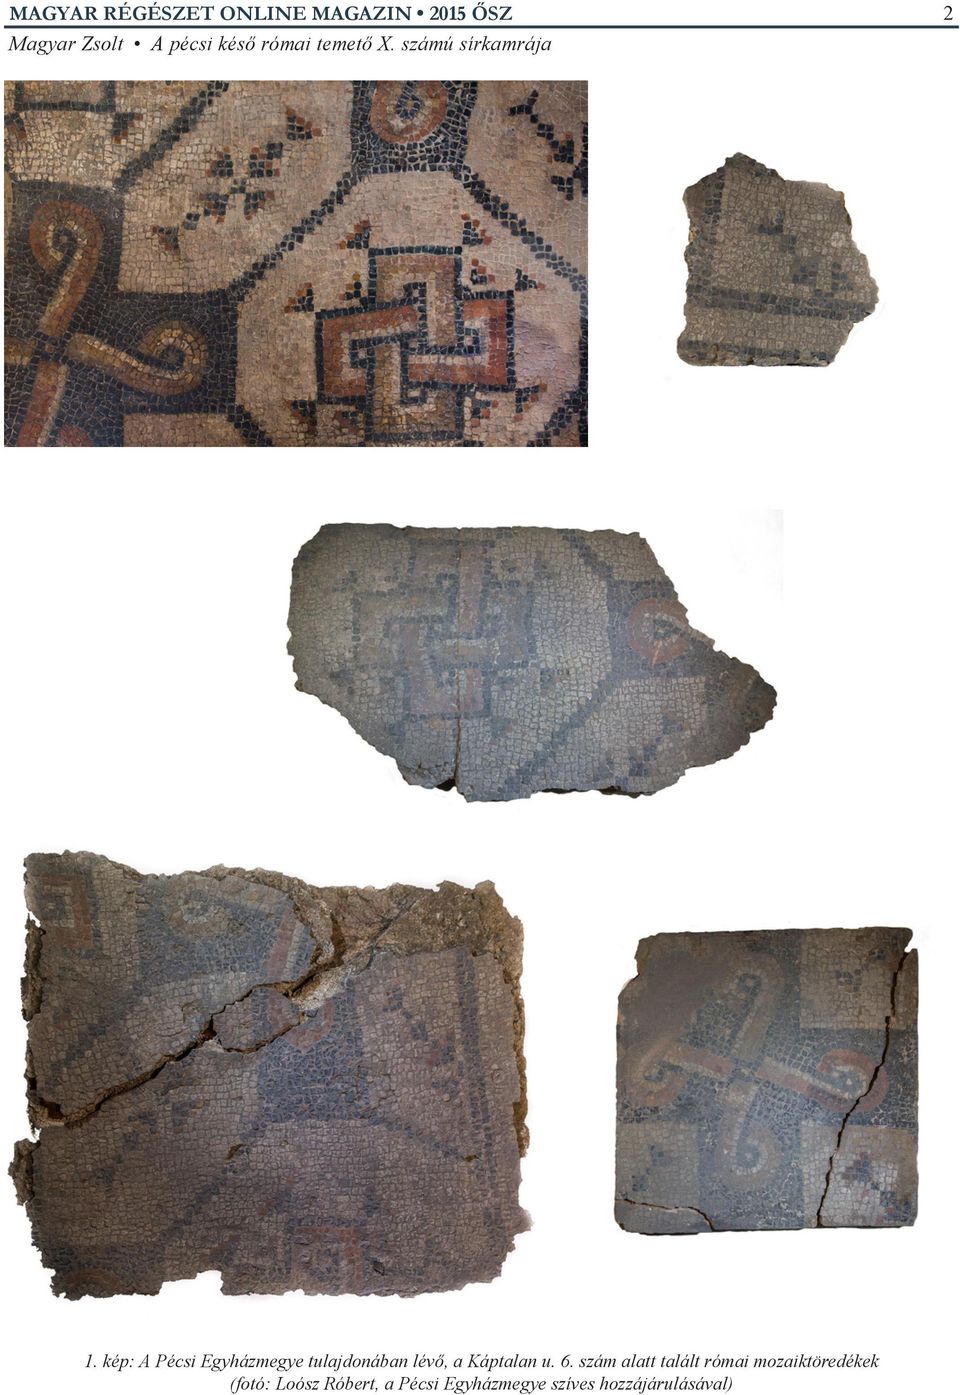 szám alatt talált római mozaiktöredékek